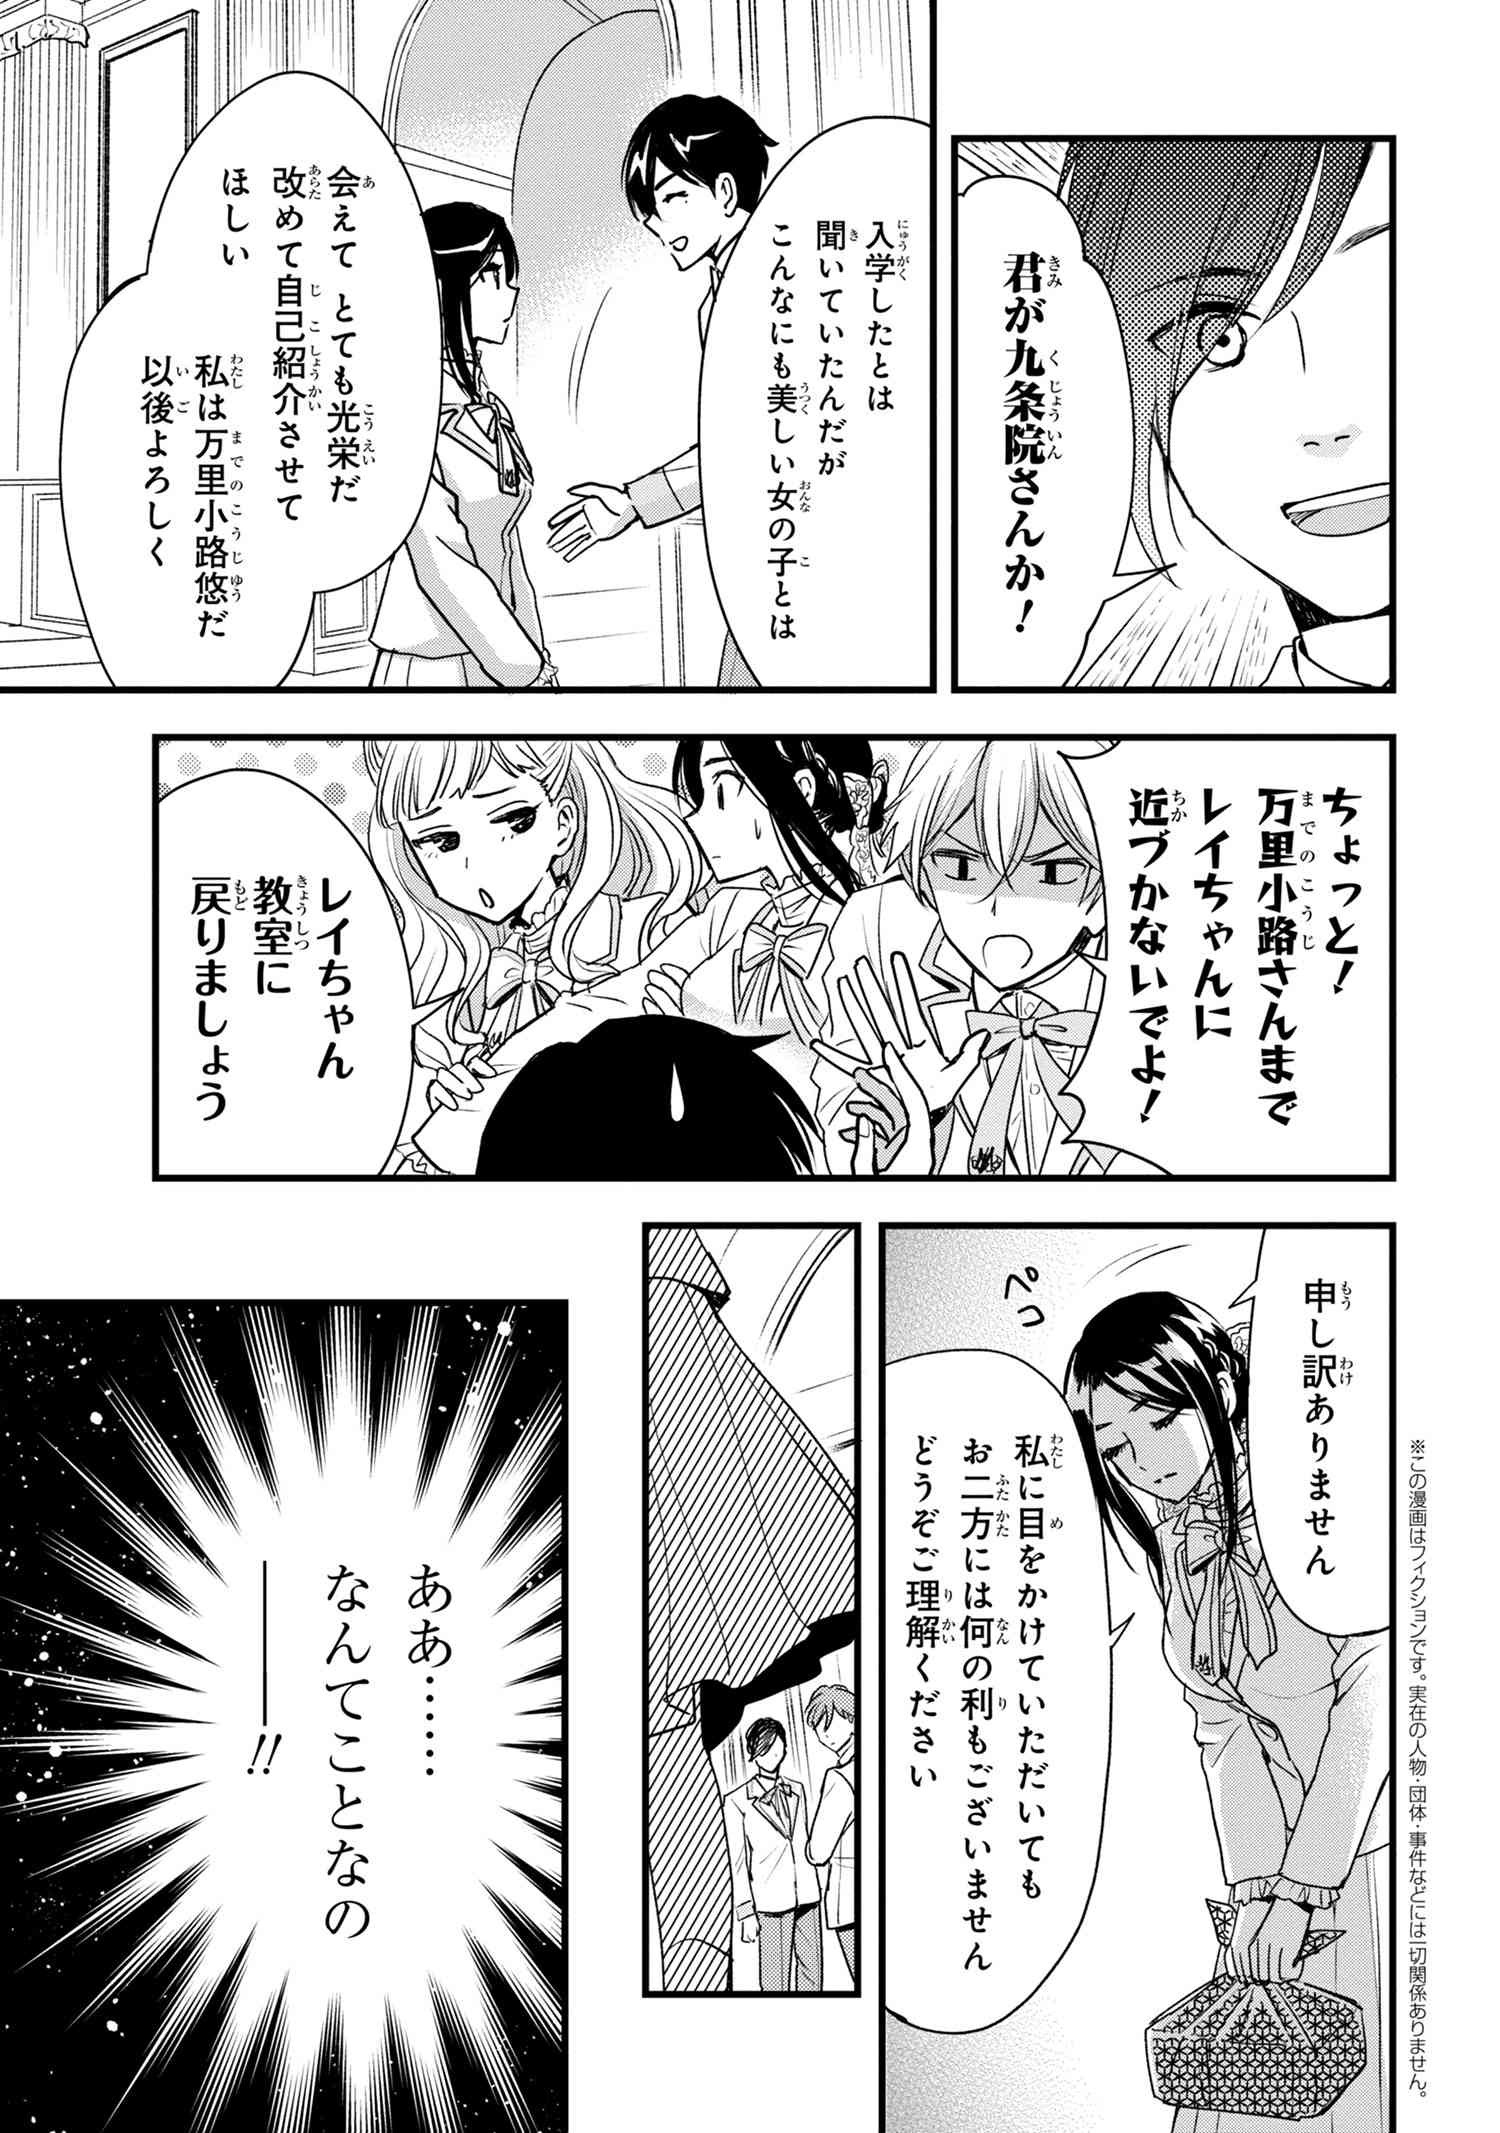 Reiko no Fuugi Akuyaku Reijou to Yobarete imasu ga, tada no Binbou Musume desu - Chapter 12-2 - Page 1